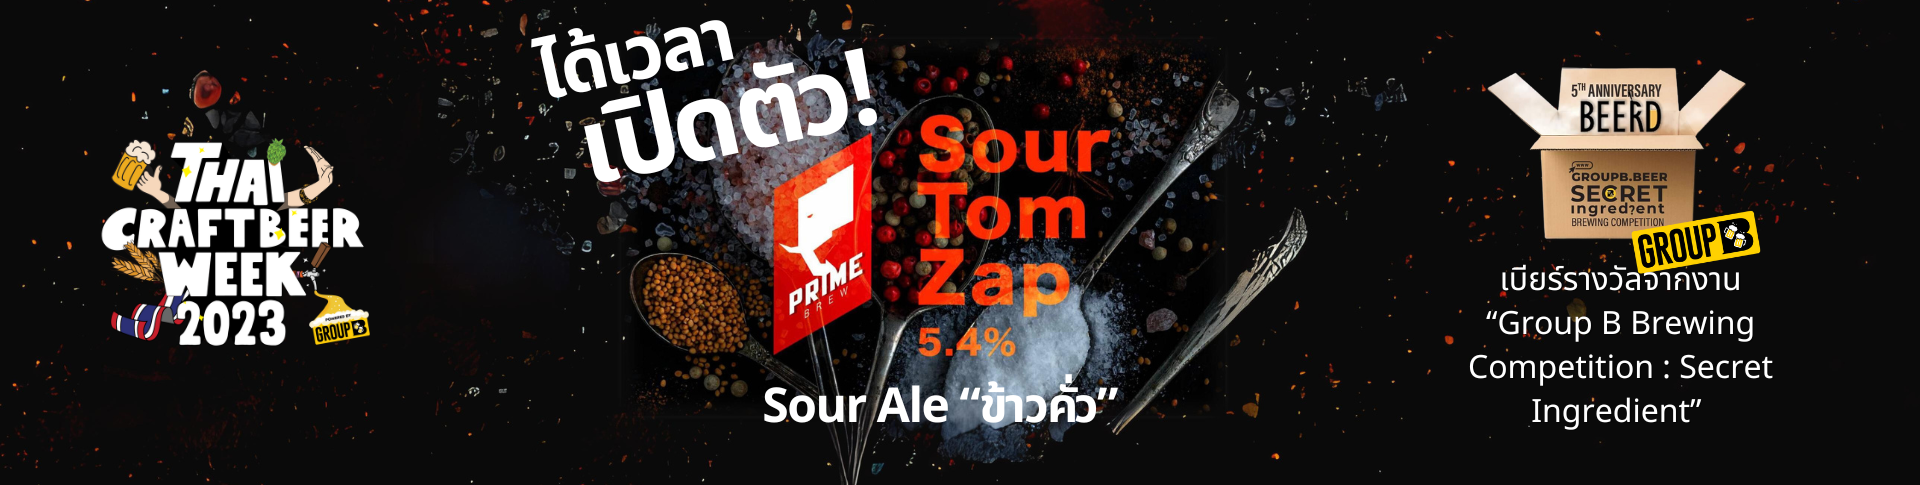 เปิดตัวเบียร์ “SourTom Zap”Sour Ale ข้าวคั่ว @Code Craft